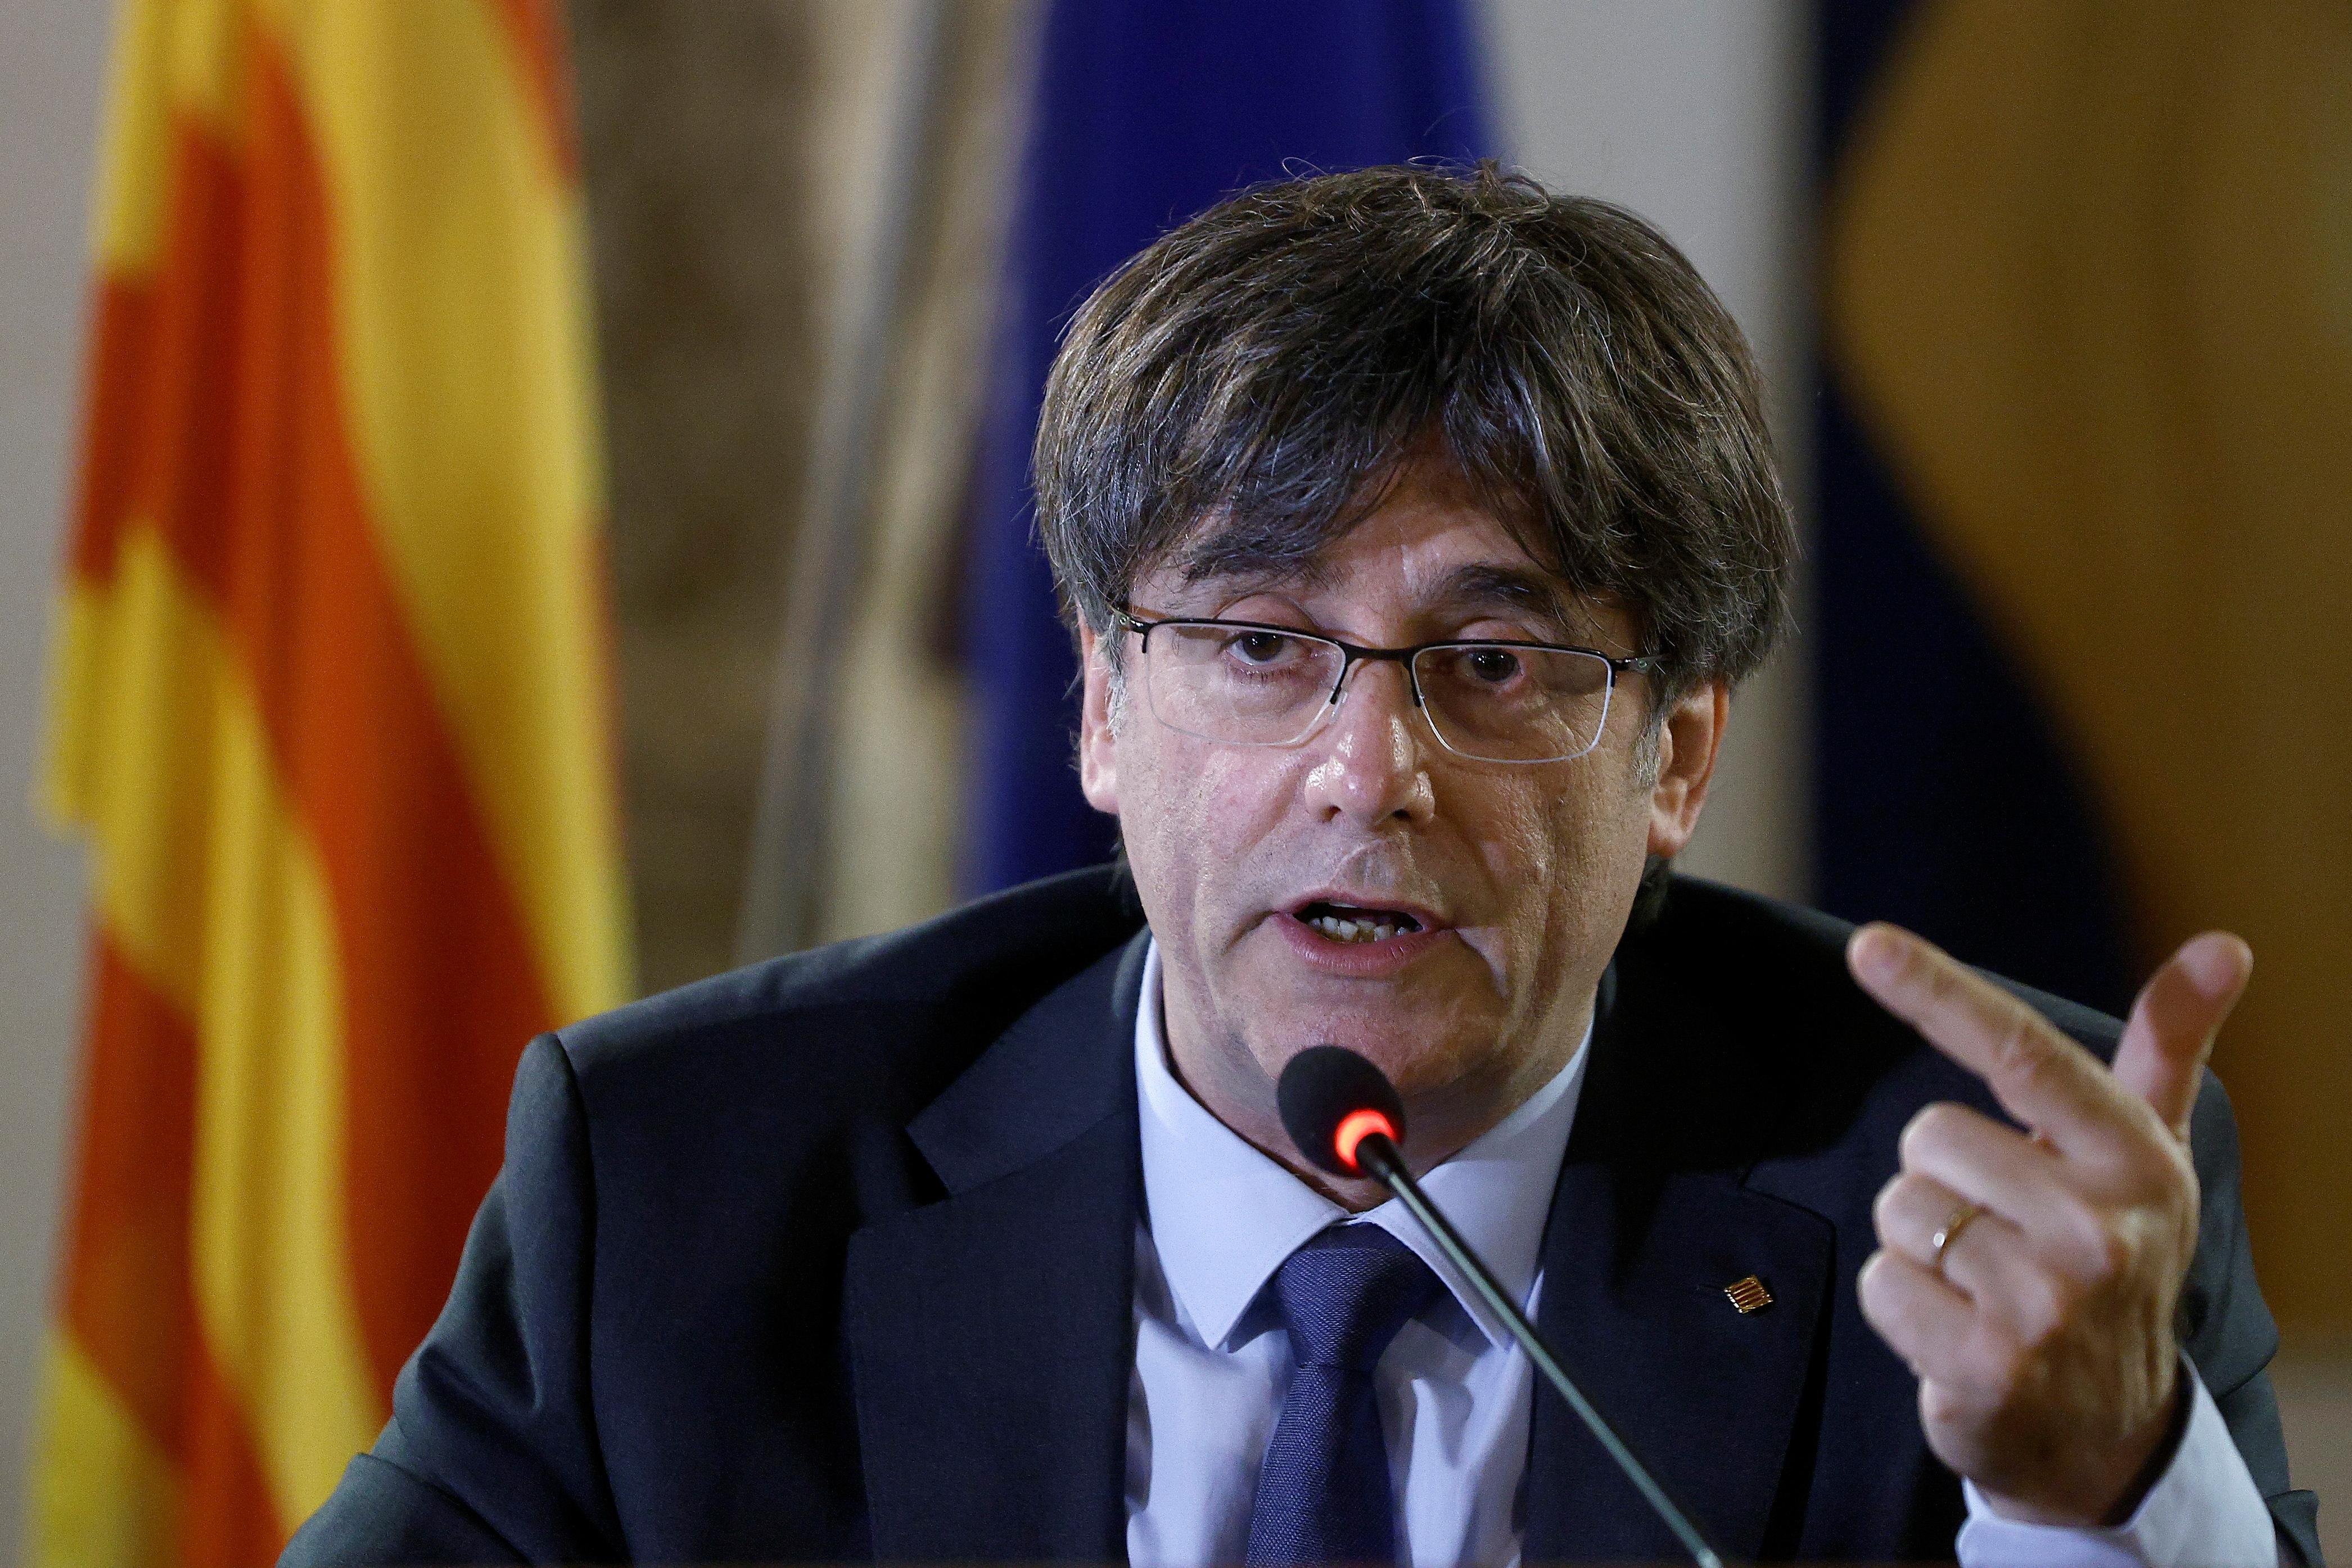 La petición de financiación al Barça llegó a pedido de Carles Puigdemont, ex presidente de la Generalitat de Catalunya (Foto: REUTERS)